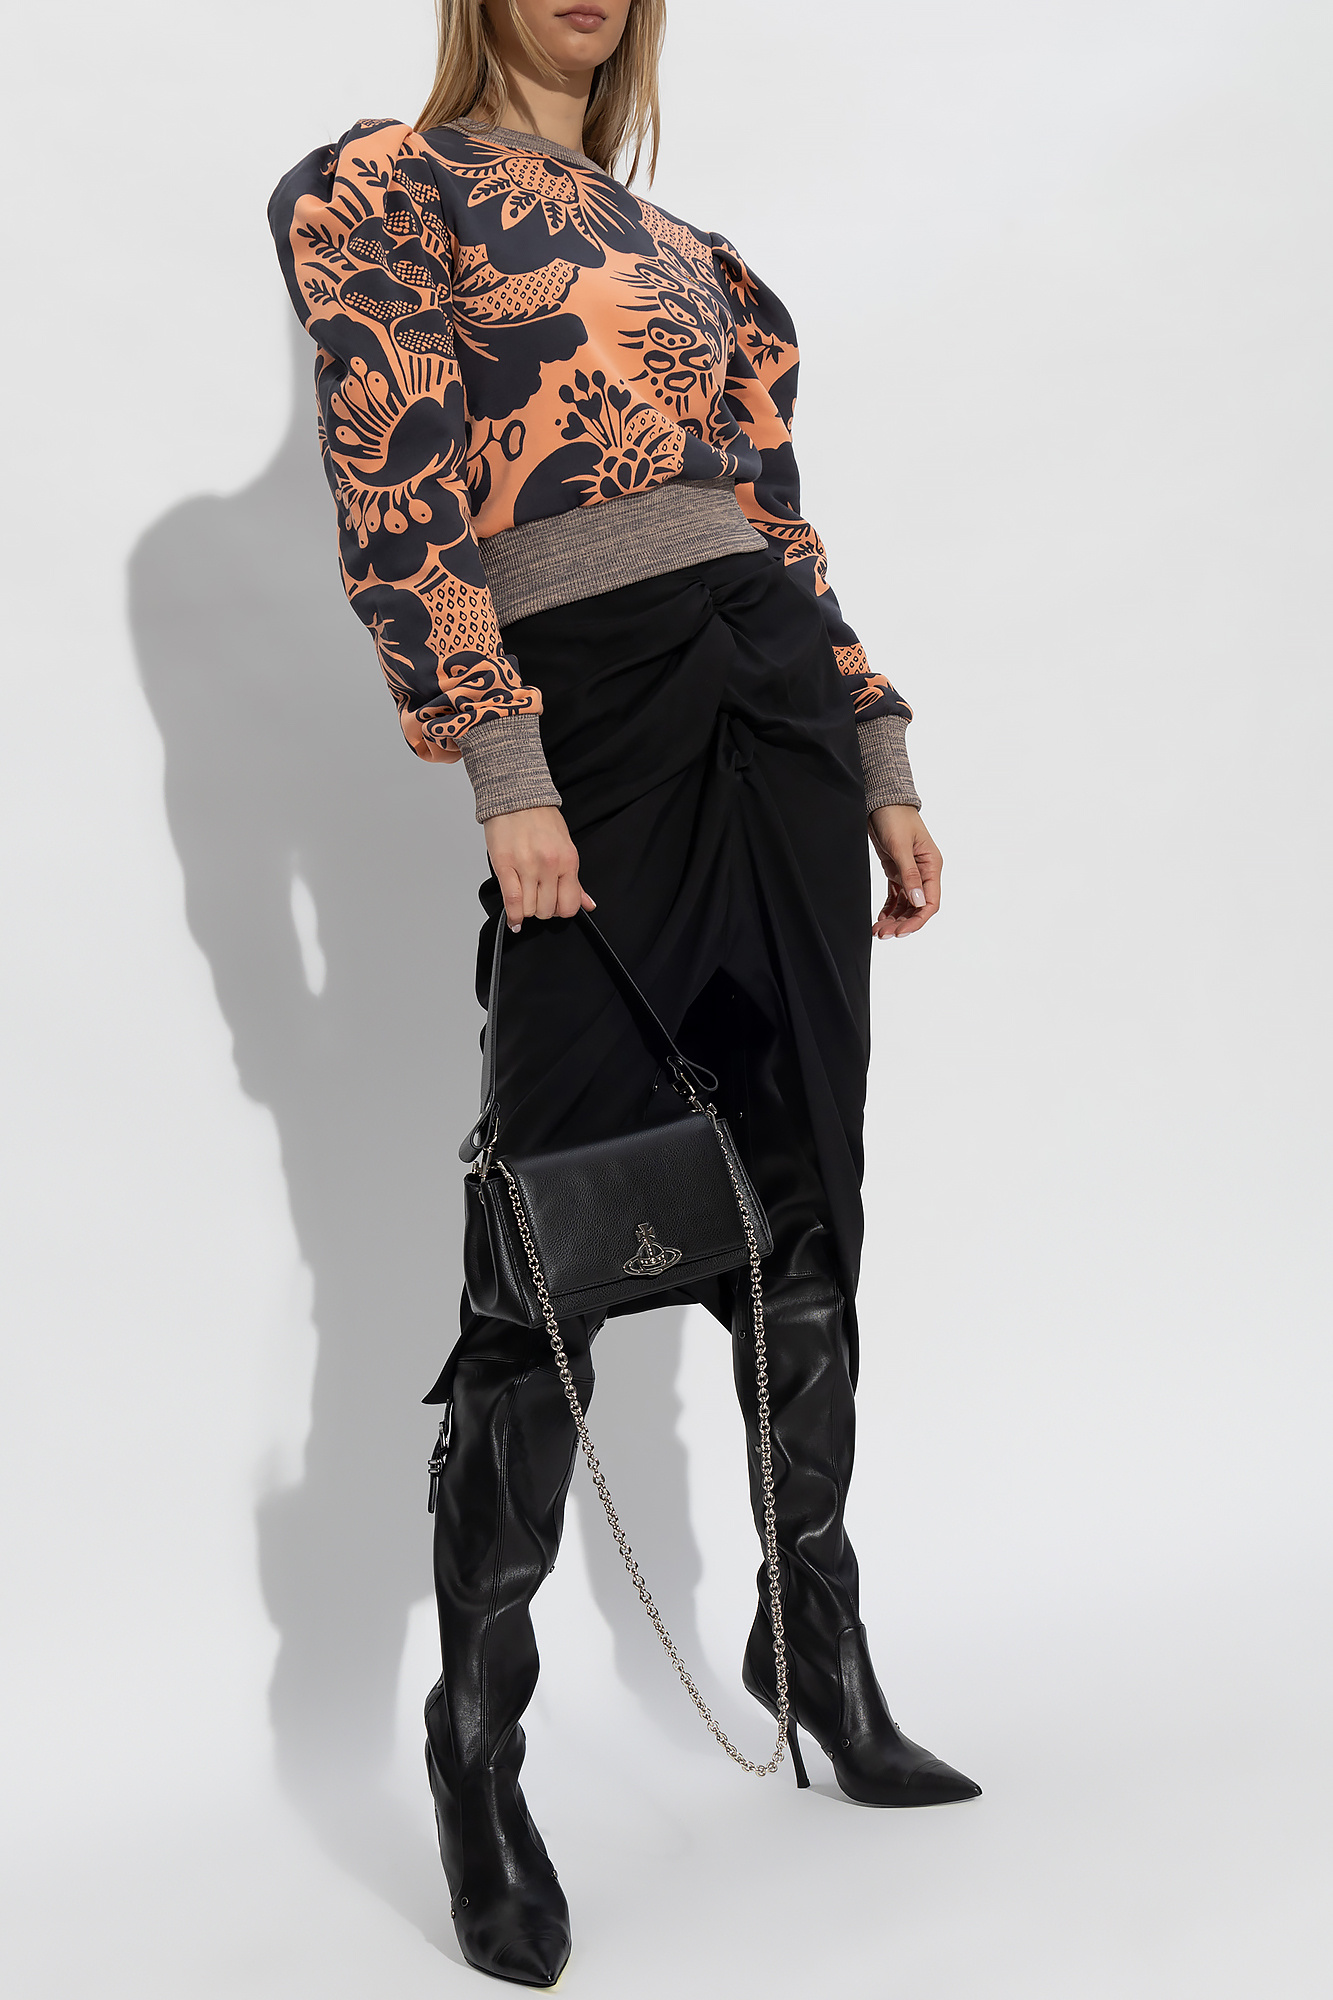 Vivienne Westwood 'Aramis' patterned sweatshirt | GenesinlifeShops